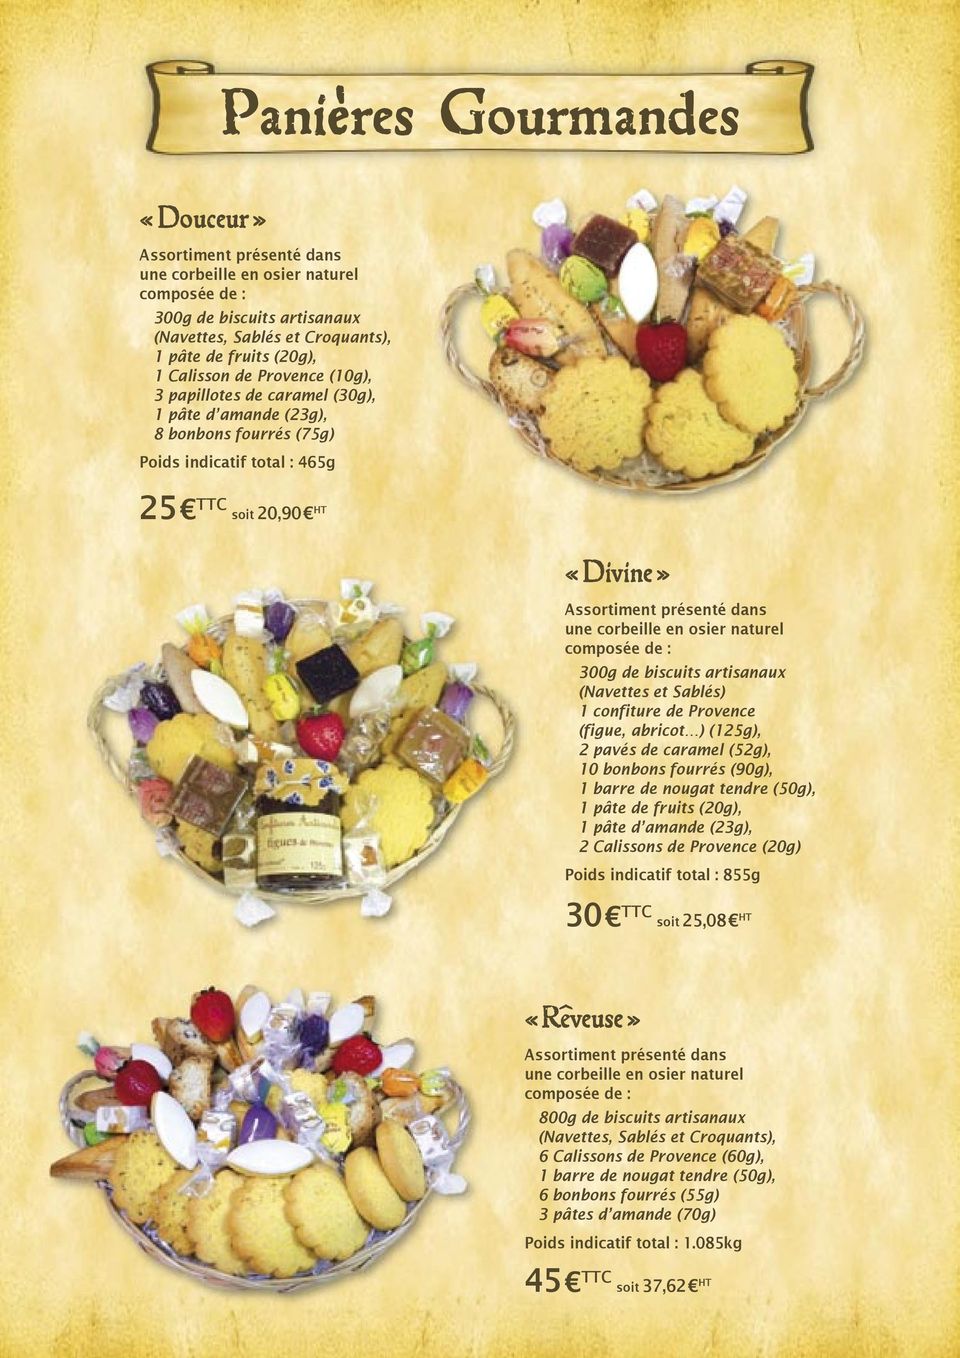 biscuits artisanaux (Navettes et Sablés) 1 confiture de Provence (figue, abricot ) (125g), 2 pavés de caramel (52g), 10 bonbons fourrés (90g), 1 pâte de fruits (20g), 1 pâte d amande (23g), 2